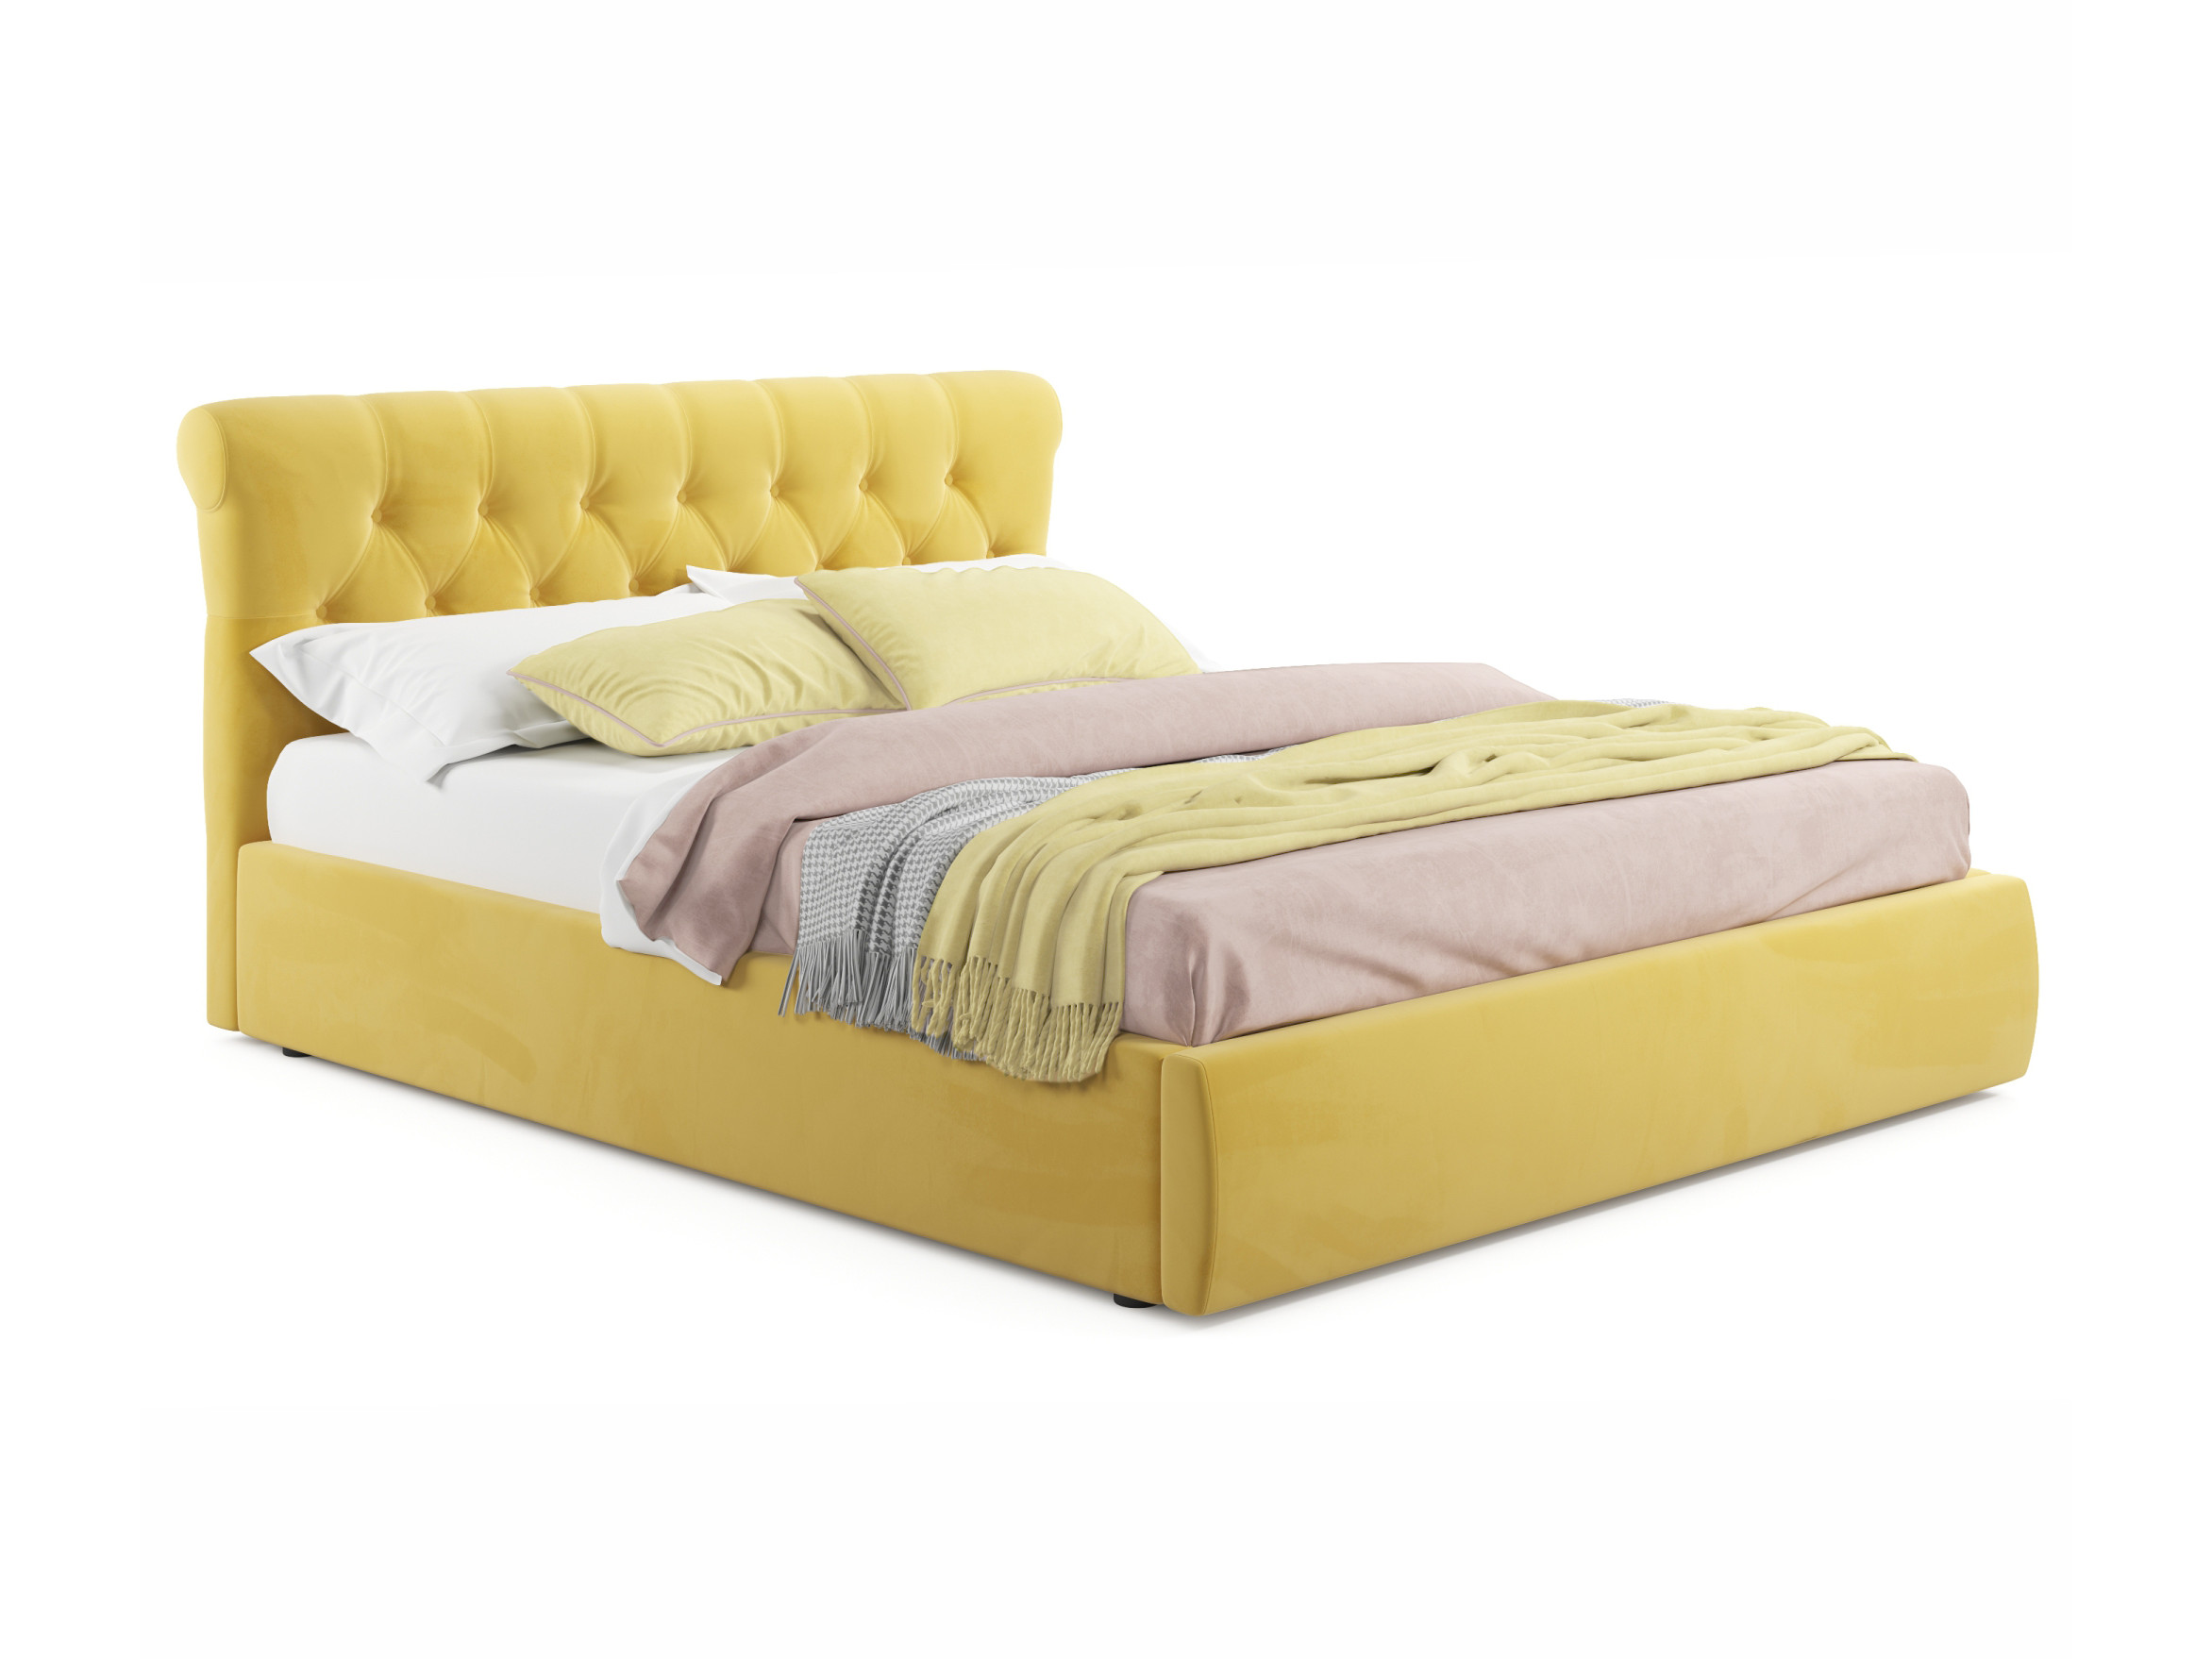 Мягкая кровать Ameli 1400 желтая с подъемным механизмом желтый, Желтый, Велюр, ДСП